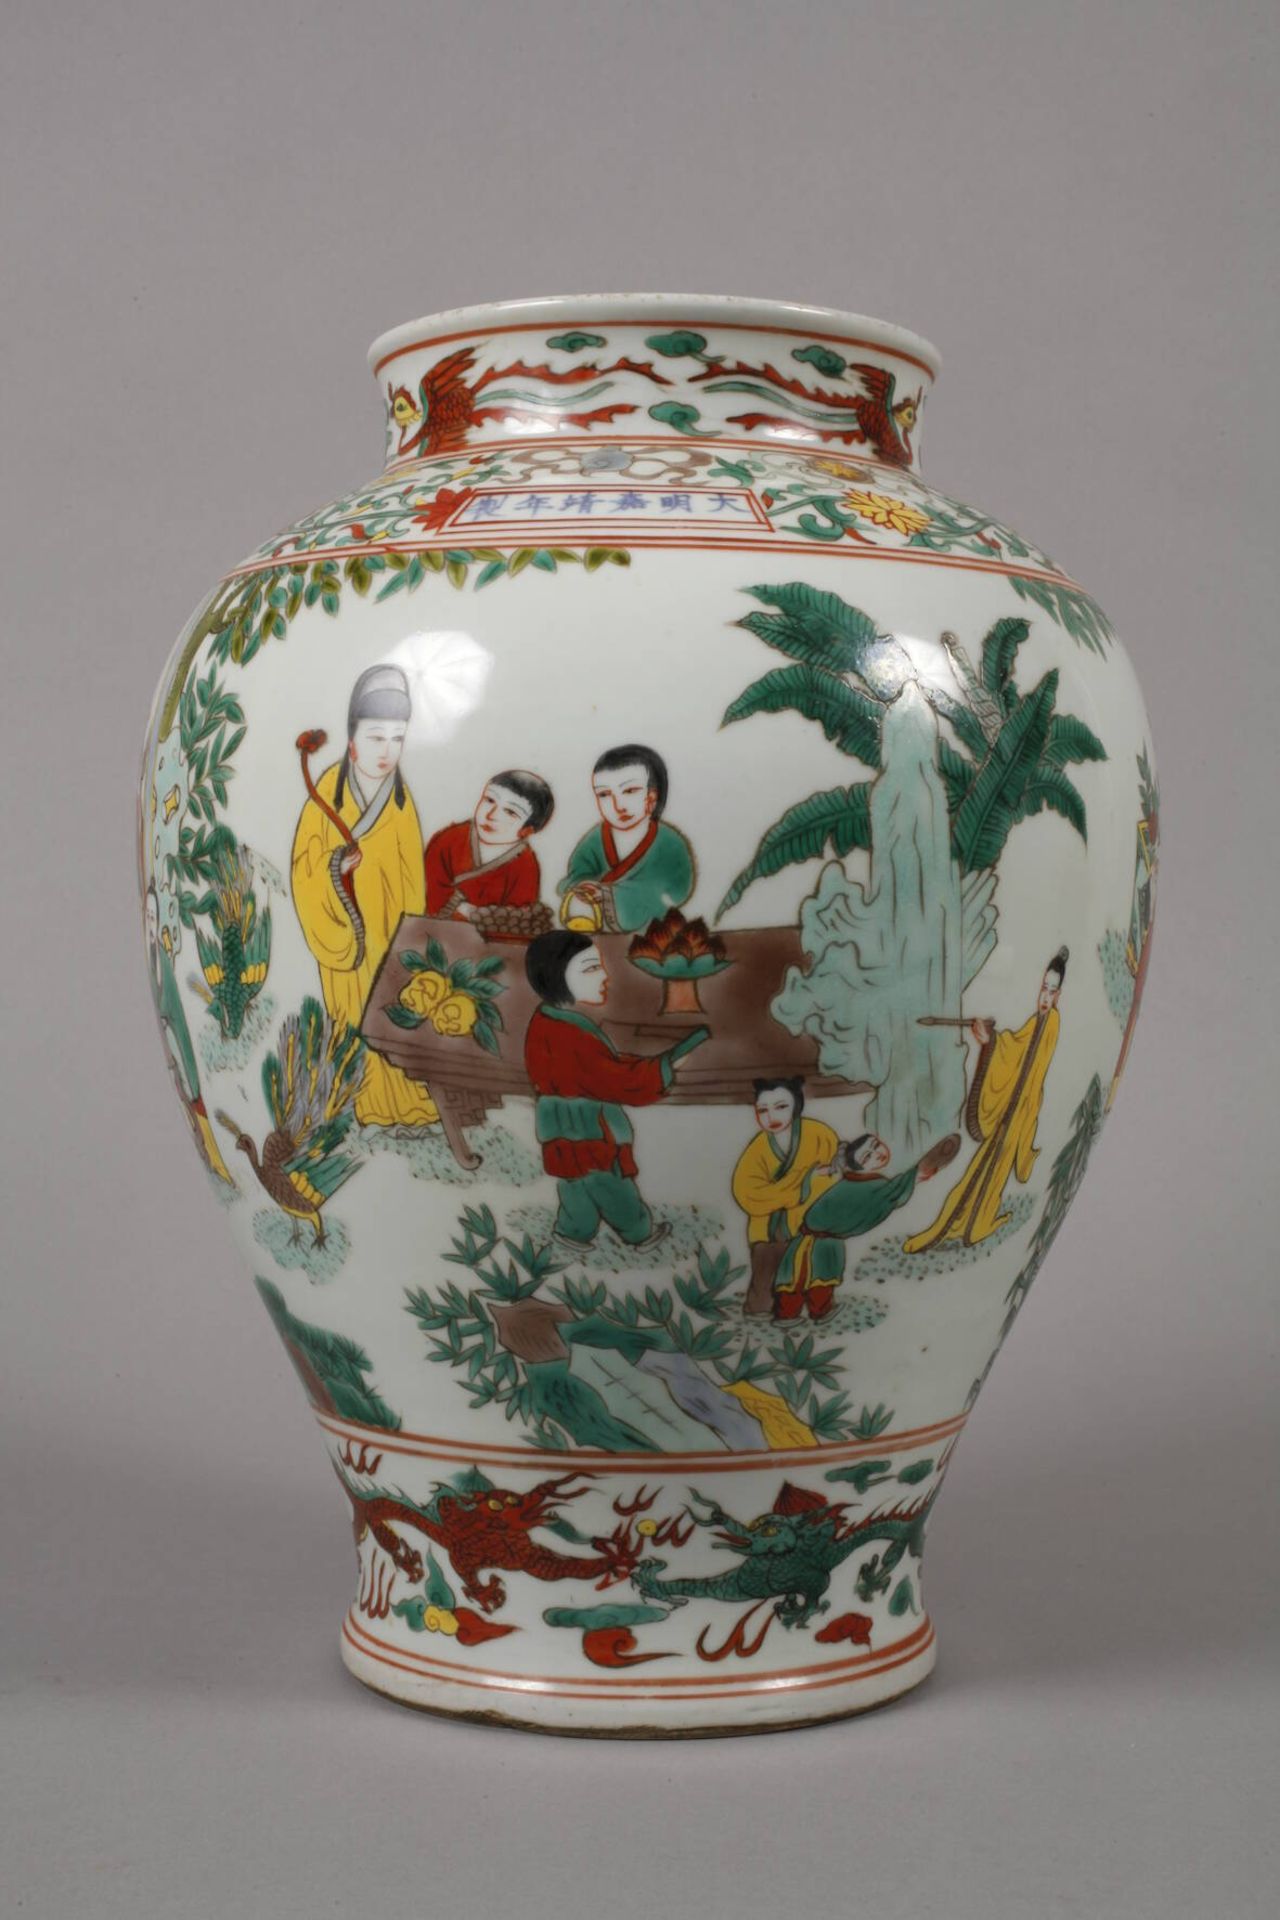 Vase Famille verte 19. Jh., ungemarkt, signiert, weiß glasiertes Porzellan in polychromer - Image 4 of 6